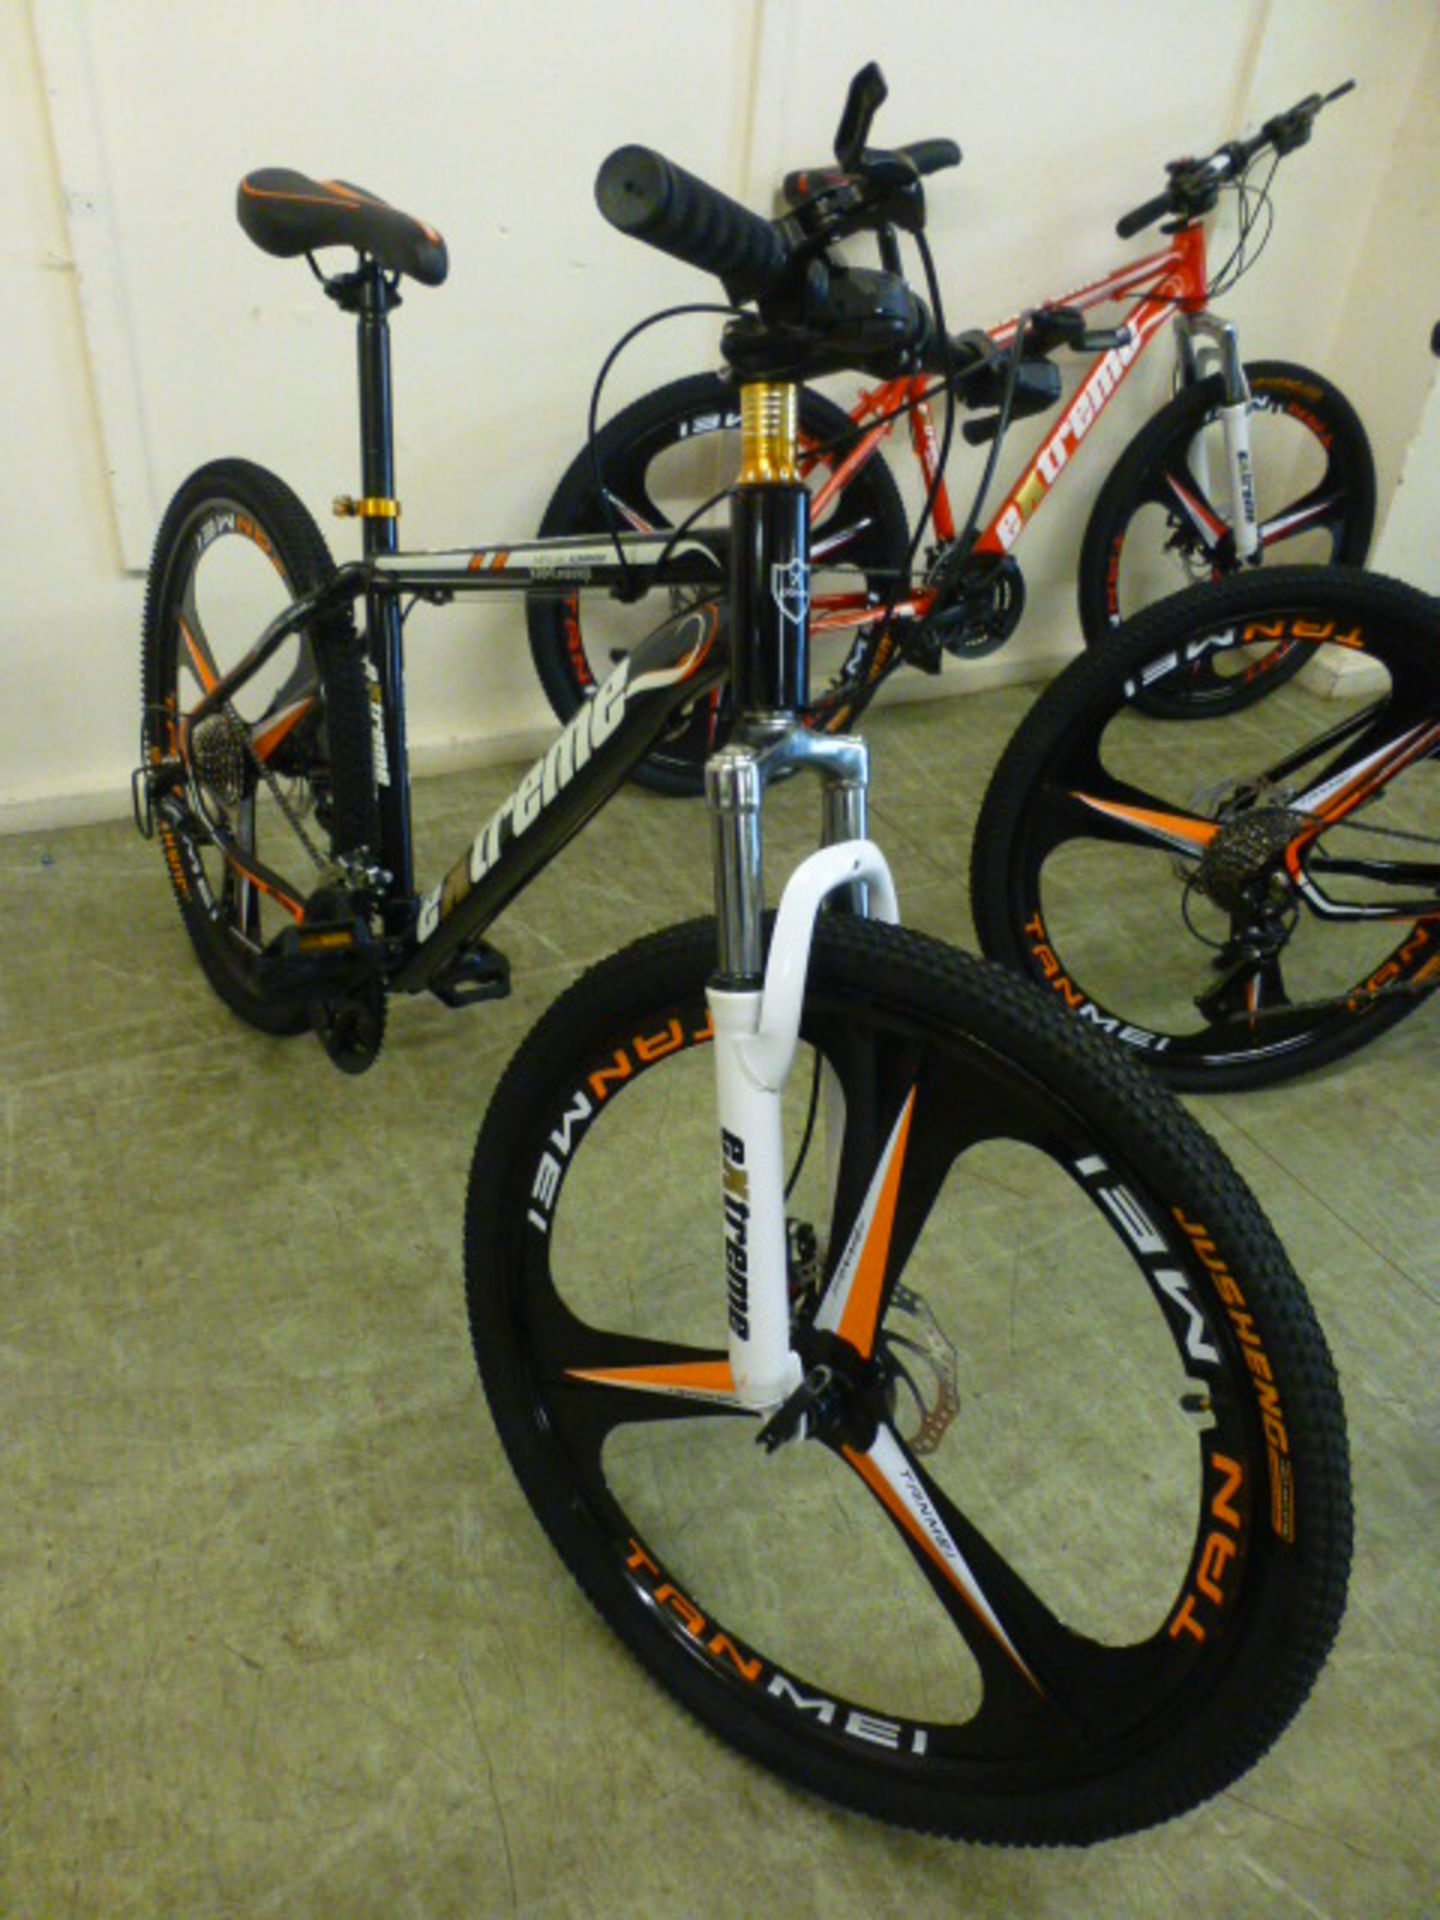 An Extreme black/orange 27 speed mountain bike with 26'' wheels